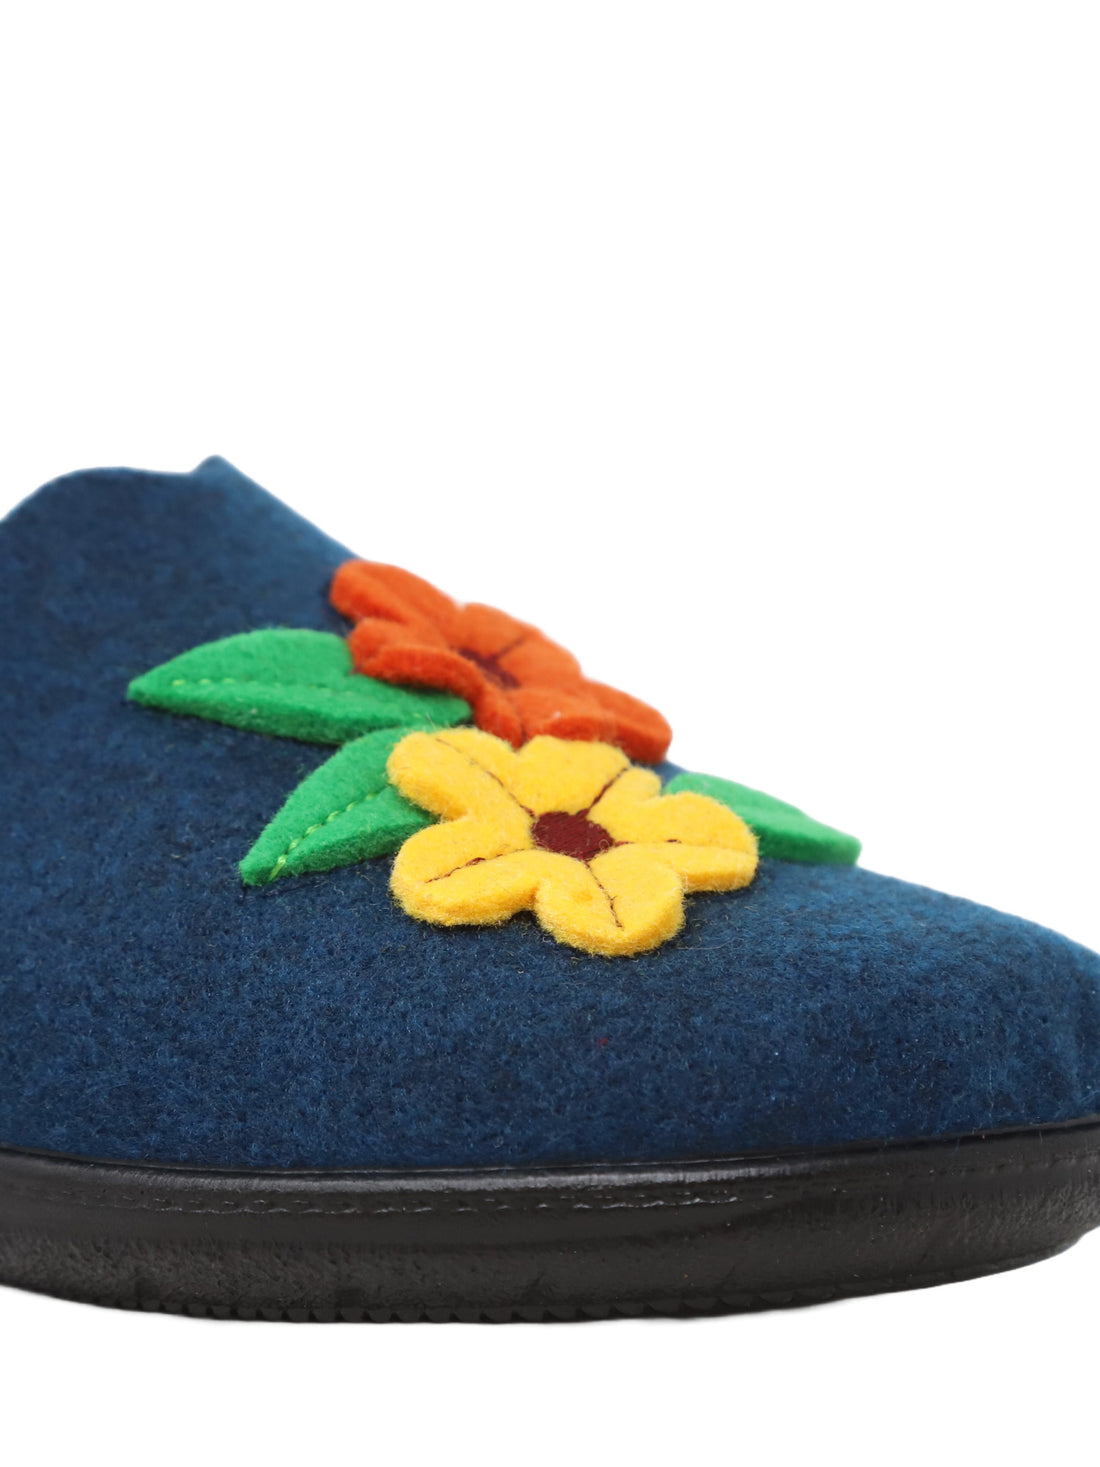 Pantofole Blu Valleverde